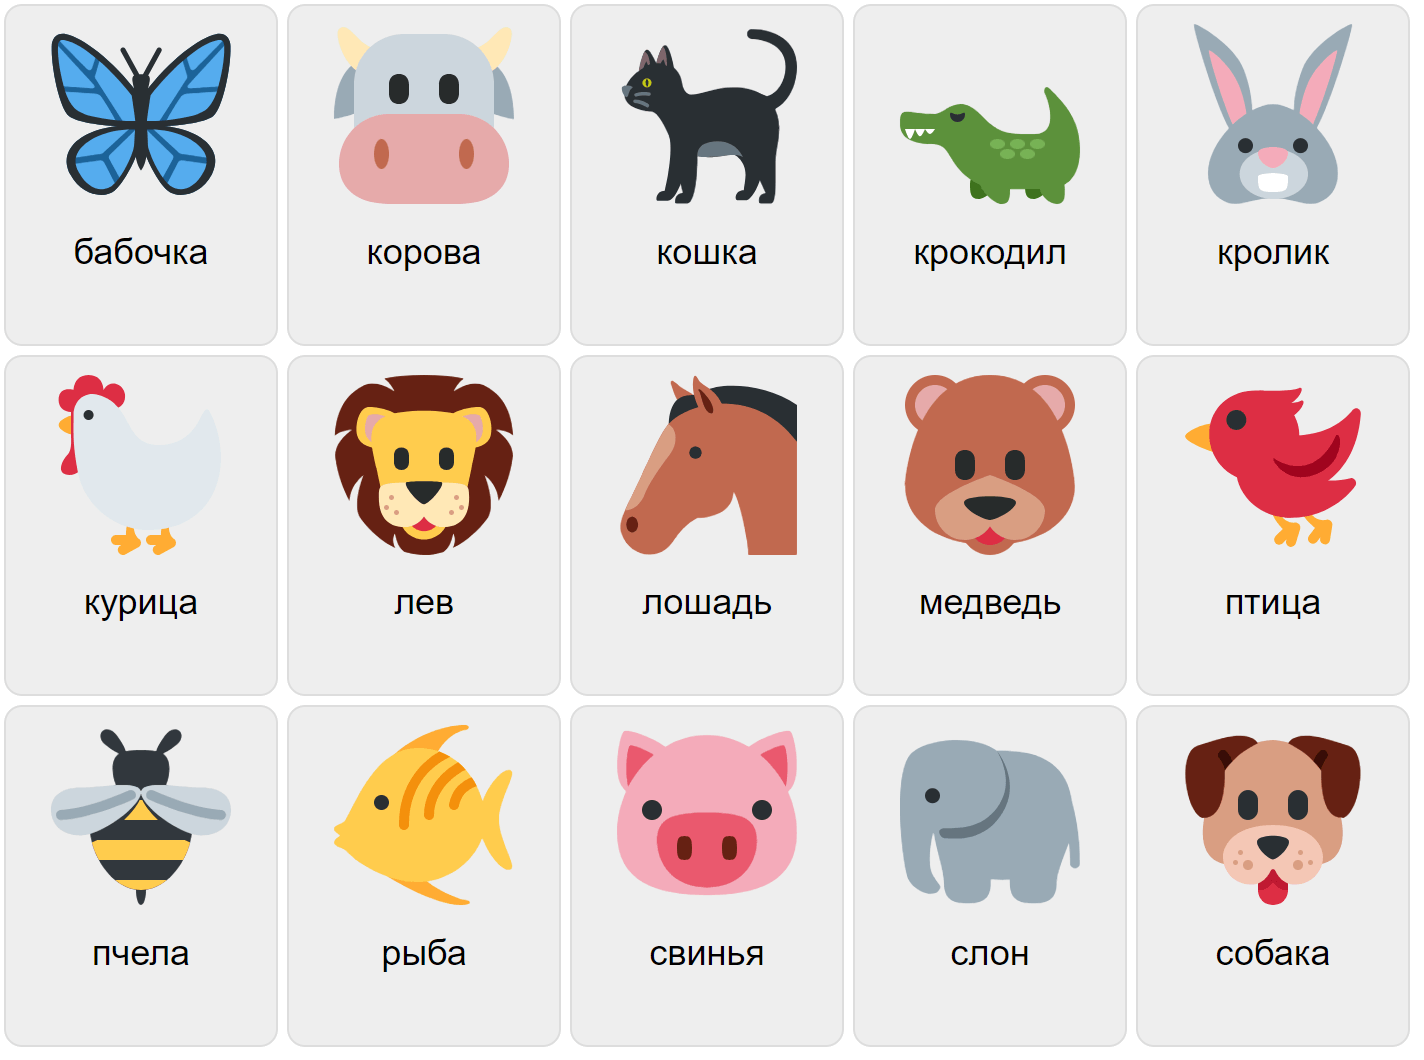 Tiere auf Russisch 1